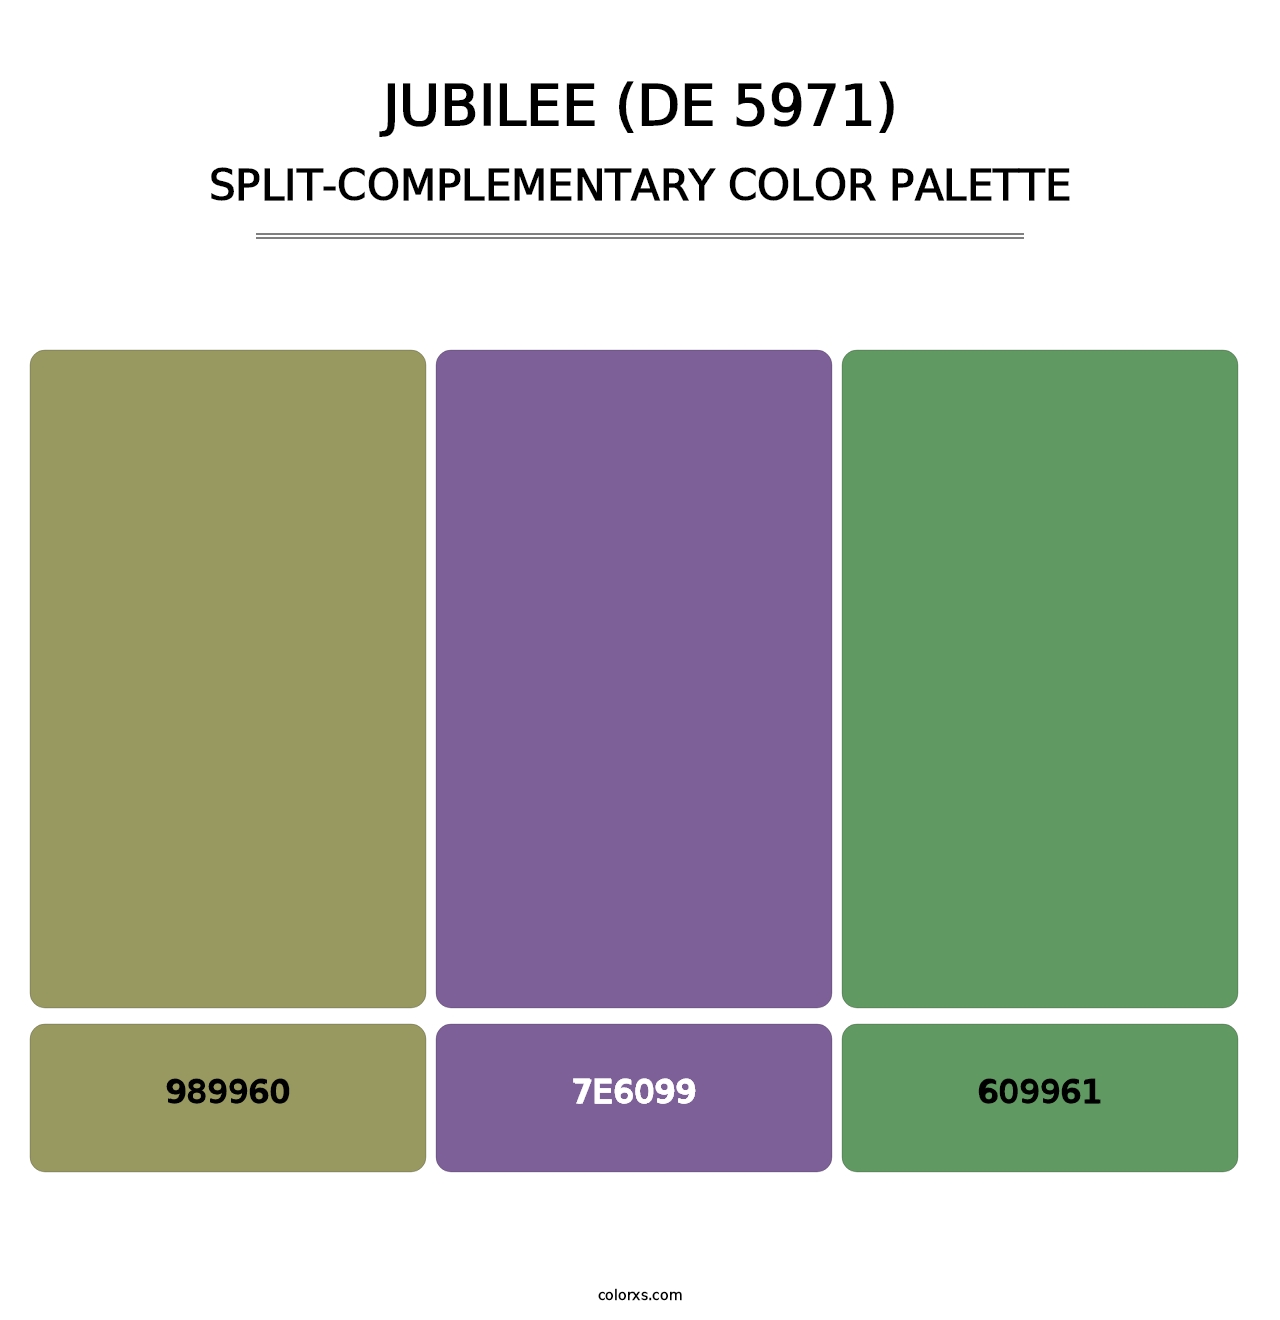 Jubilee (DE 5971) - Split-Complementary Color Palette